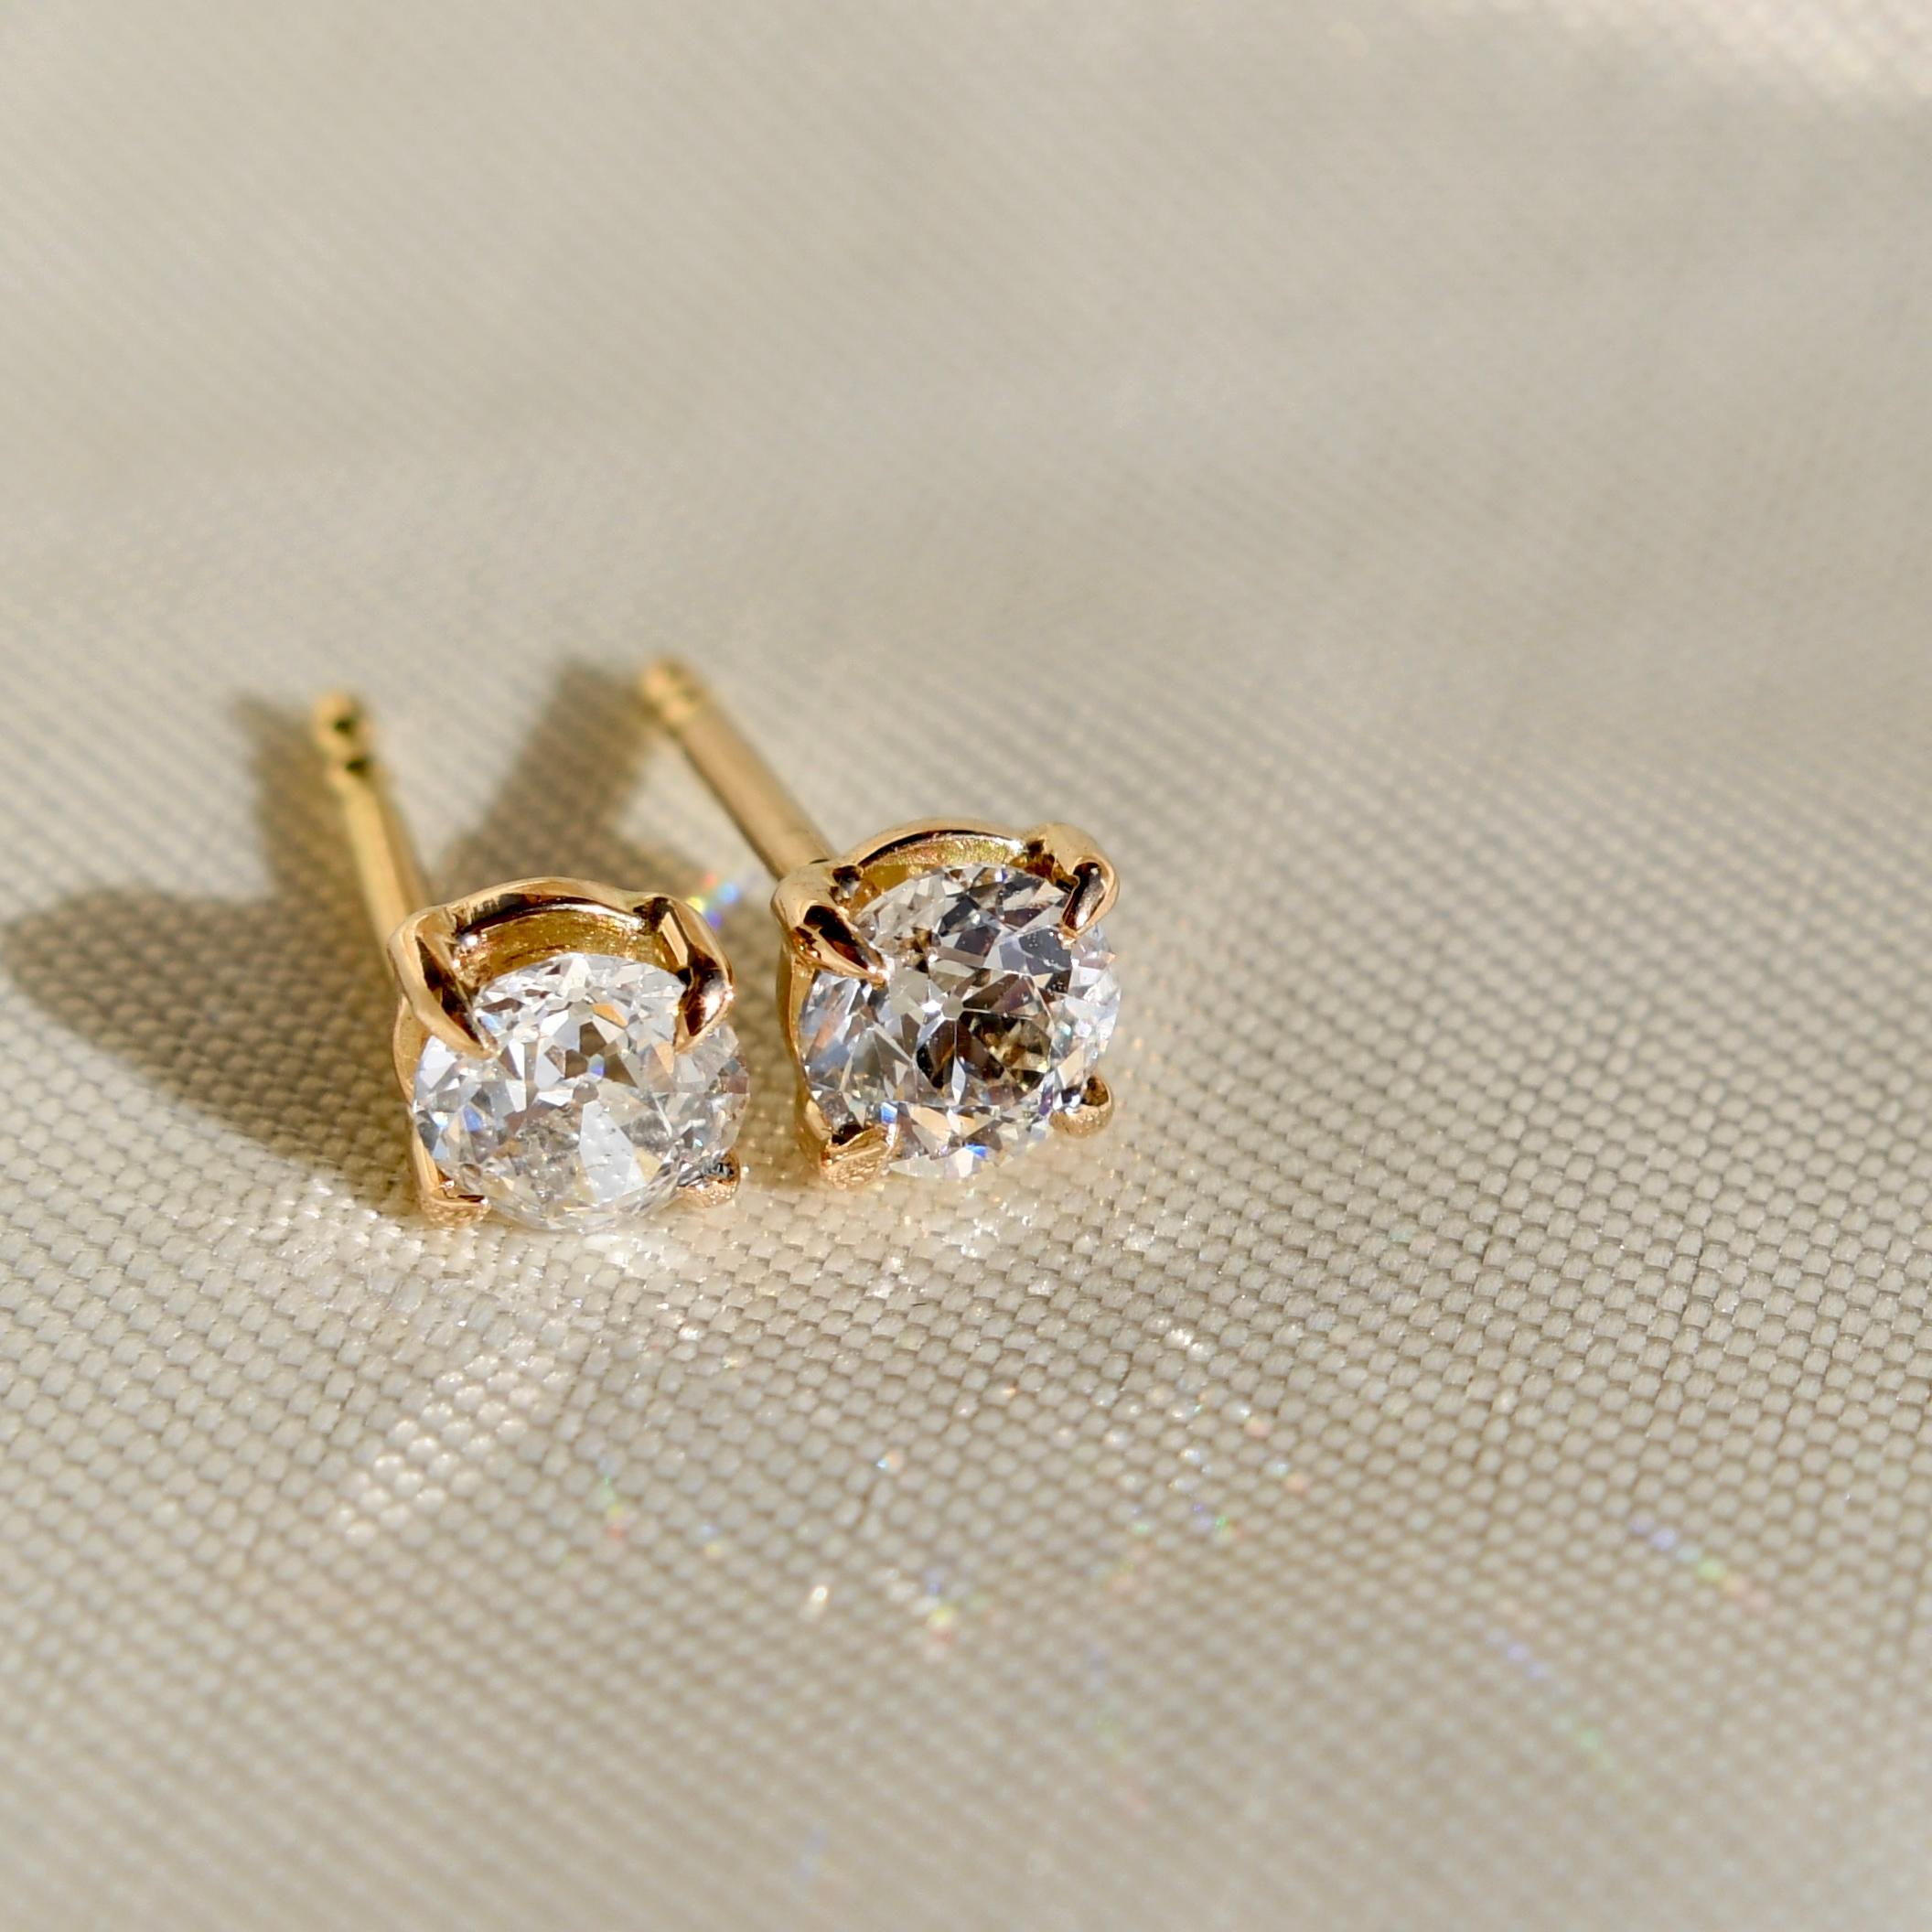 Ein Paar neu gefertigter Ohrstecker mit antiken Diamanten.

Zwei GIA-Zertifikate für die Diamanten liegen bei. 

- Ein Diamant im alten Minenschliff, 4,32 x 4,67 x 3,04 mm/ 0,42 ct (GIA J/ SI2) 
- Ein Diamant im alten Minenschliff, 4,32 x 4,69 x